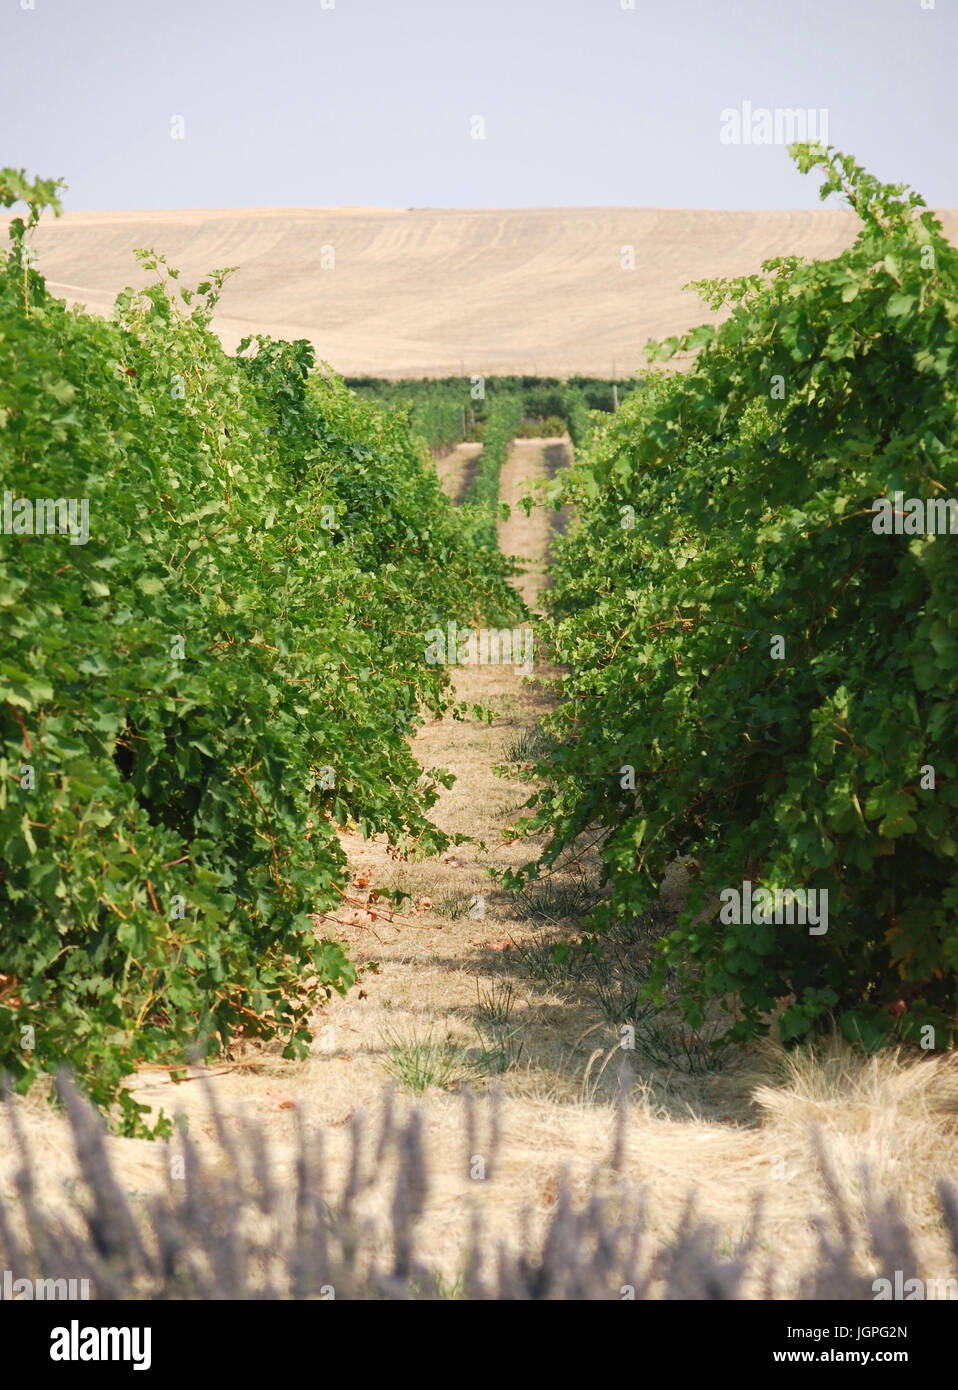 Rows of grapes growing in the vineyard - Walla Walla, WA. USA Stock Photo